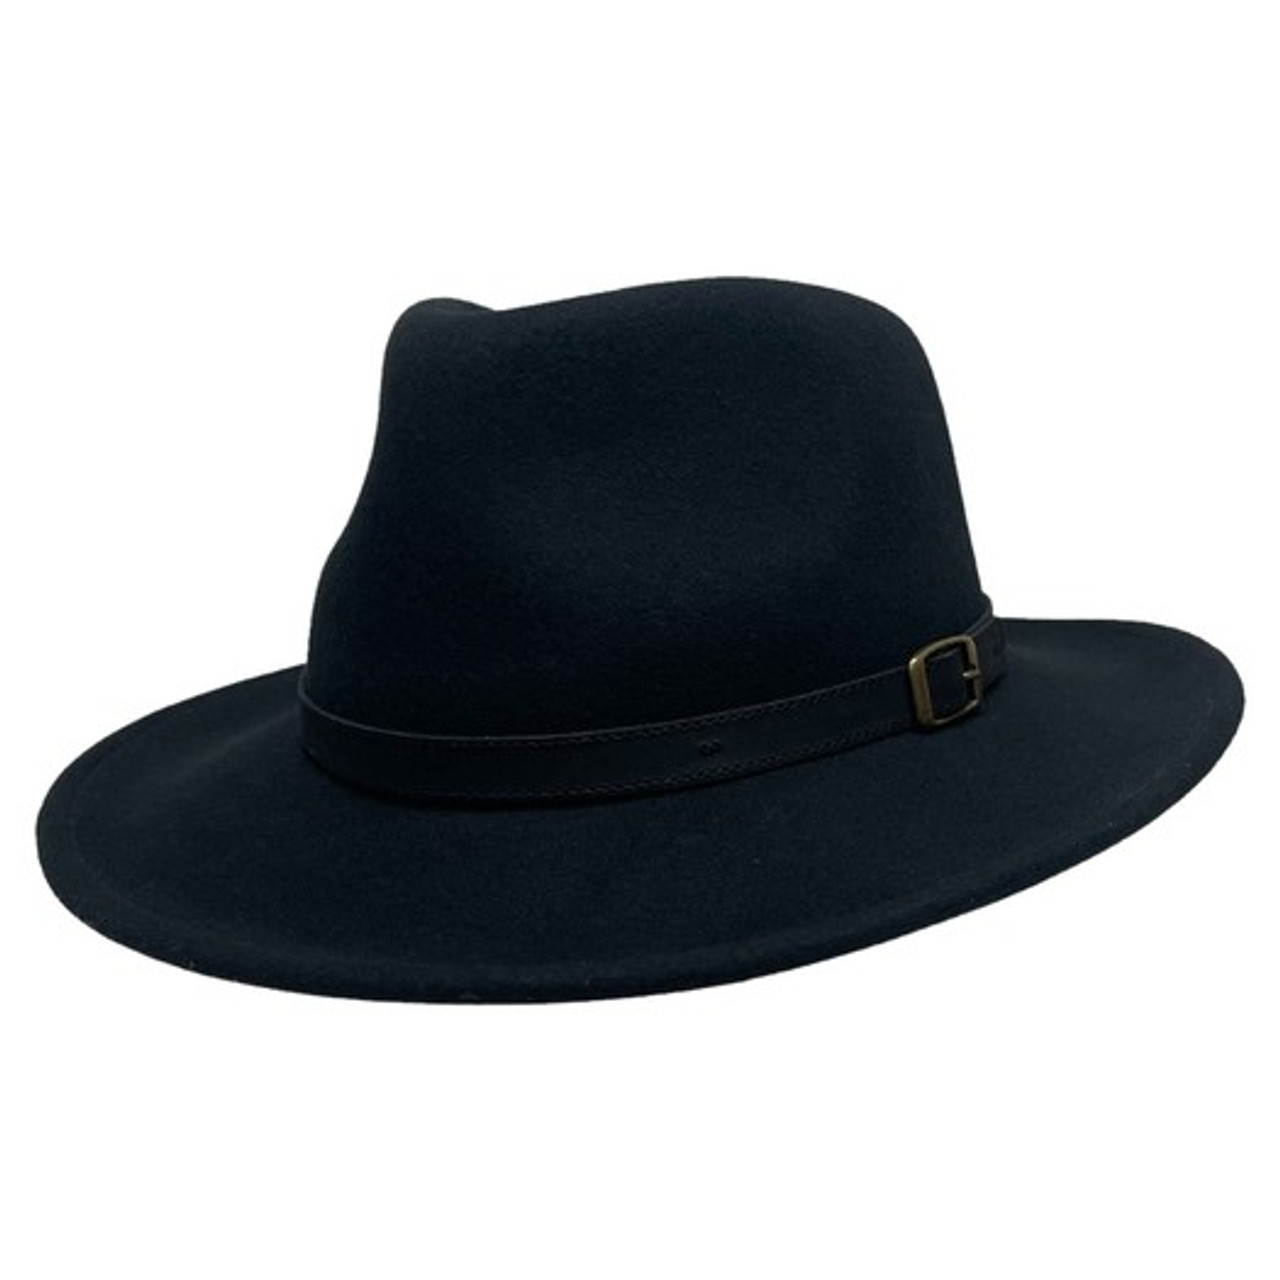 Boondocks Felt Cowboy Hat - Black